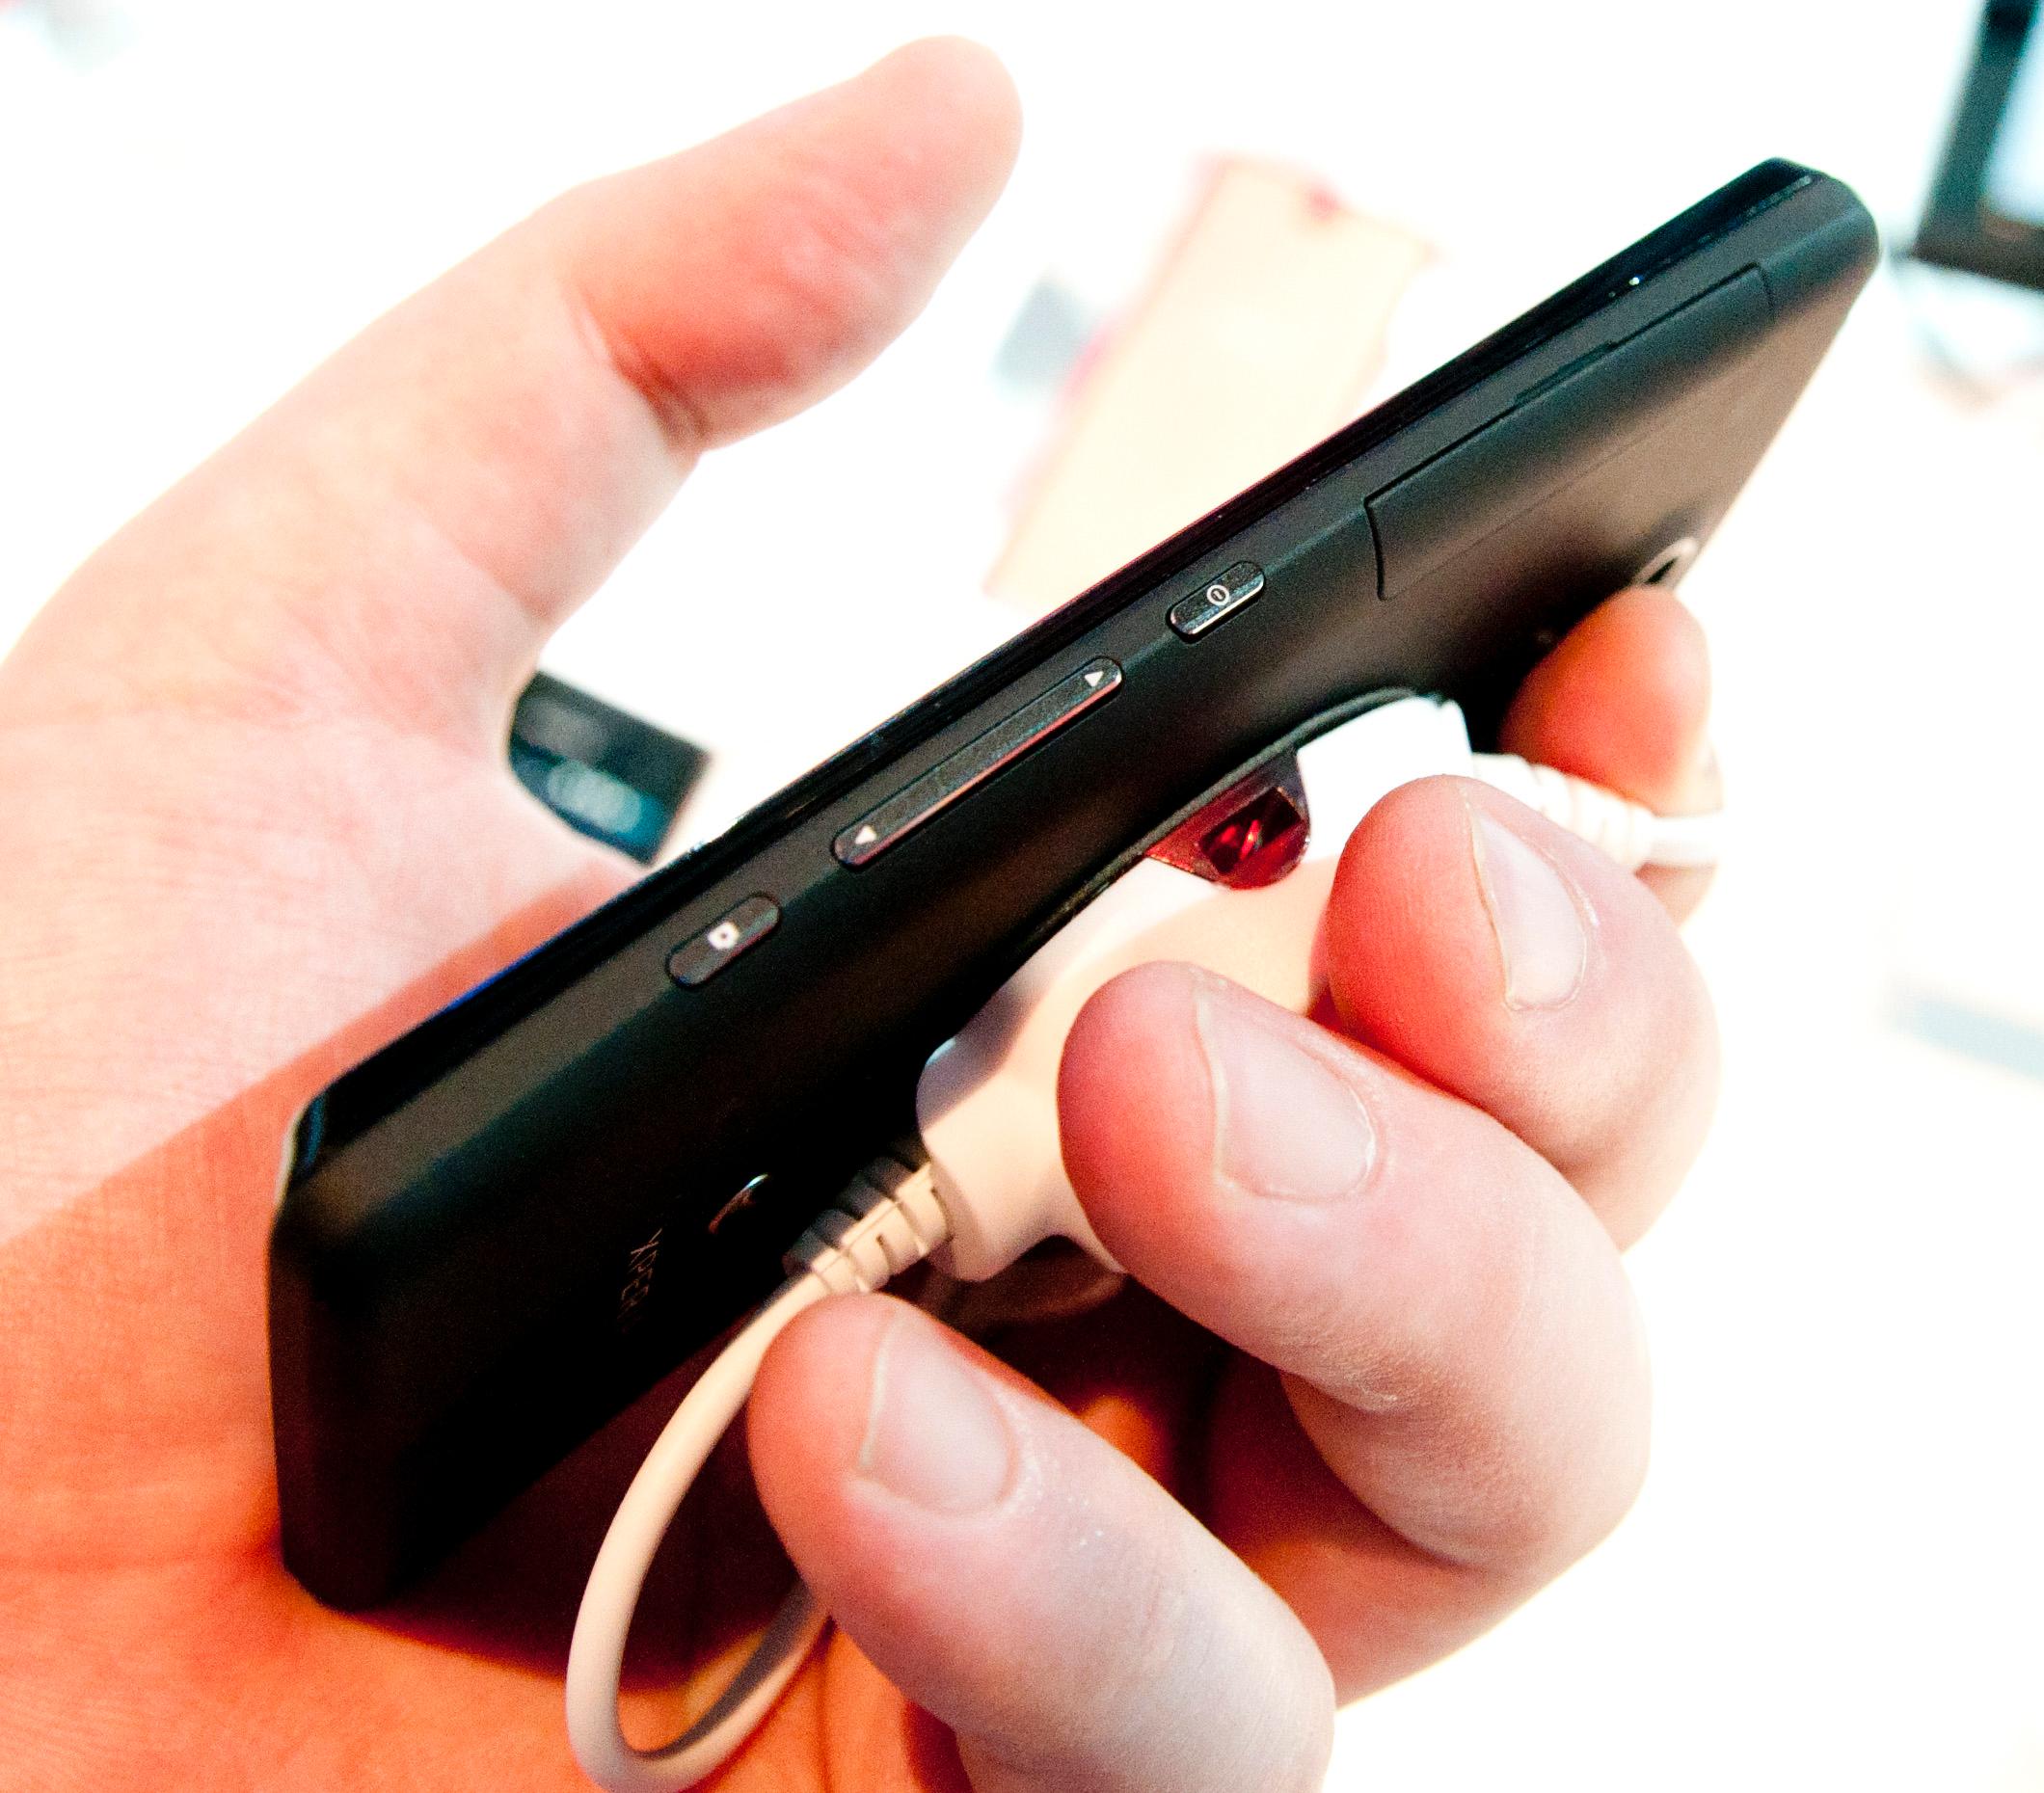 Sony har valgt en utradisjonell plassering av de fysiske knappene på Xperia T.